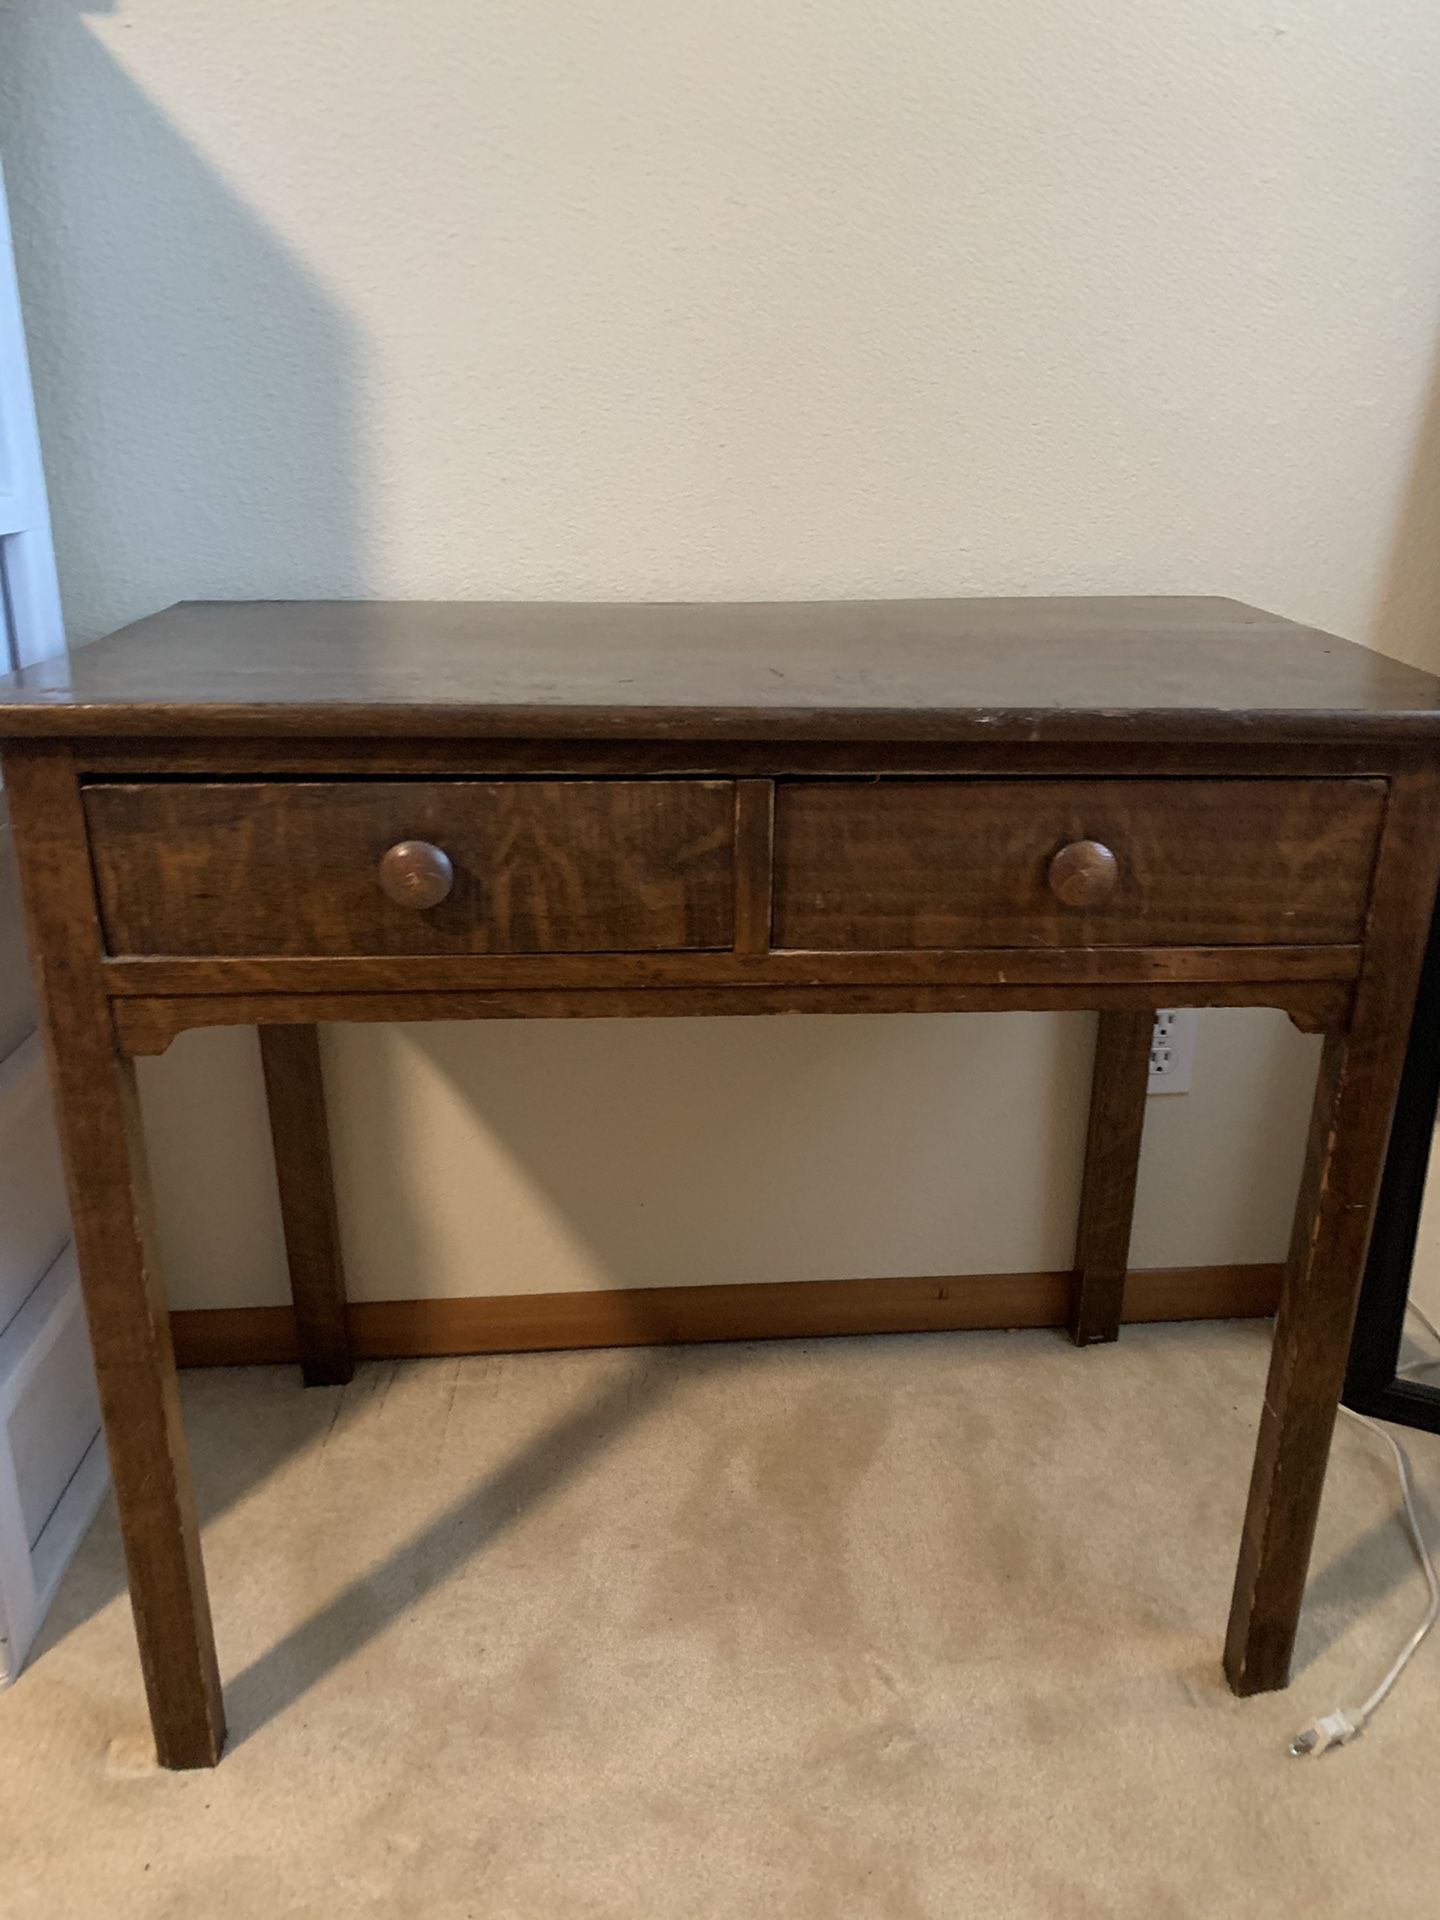 Antique desk/table